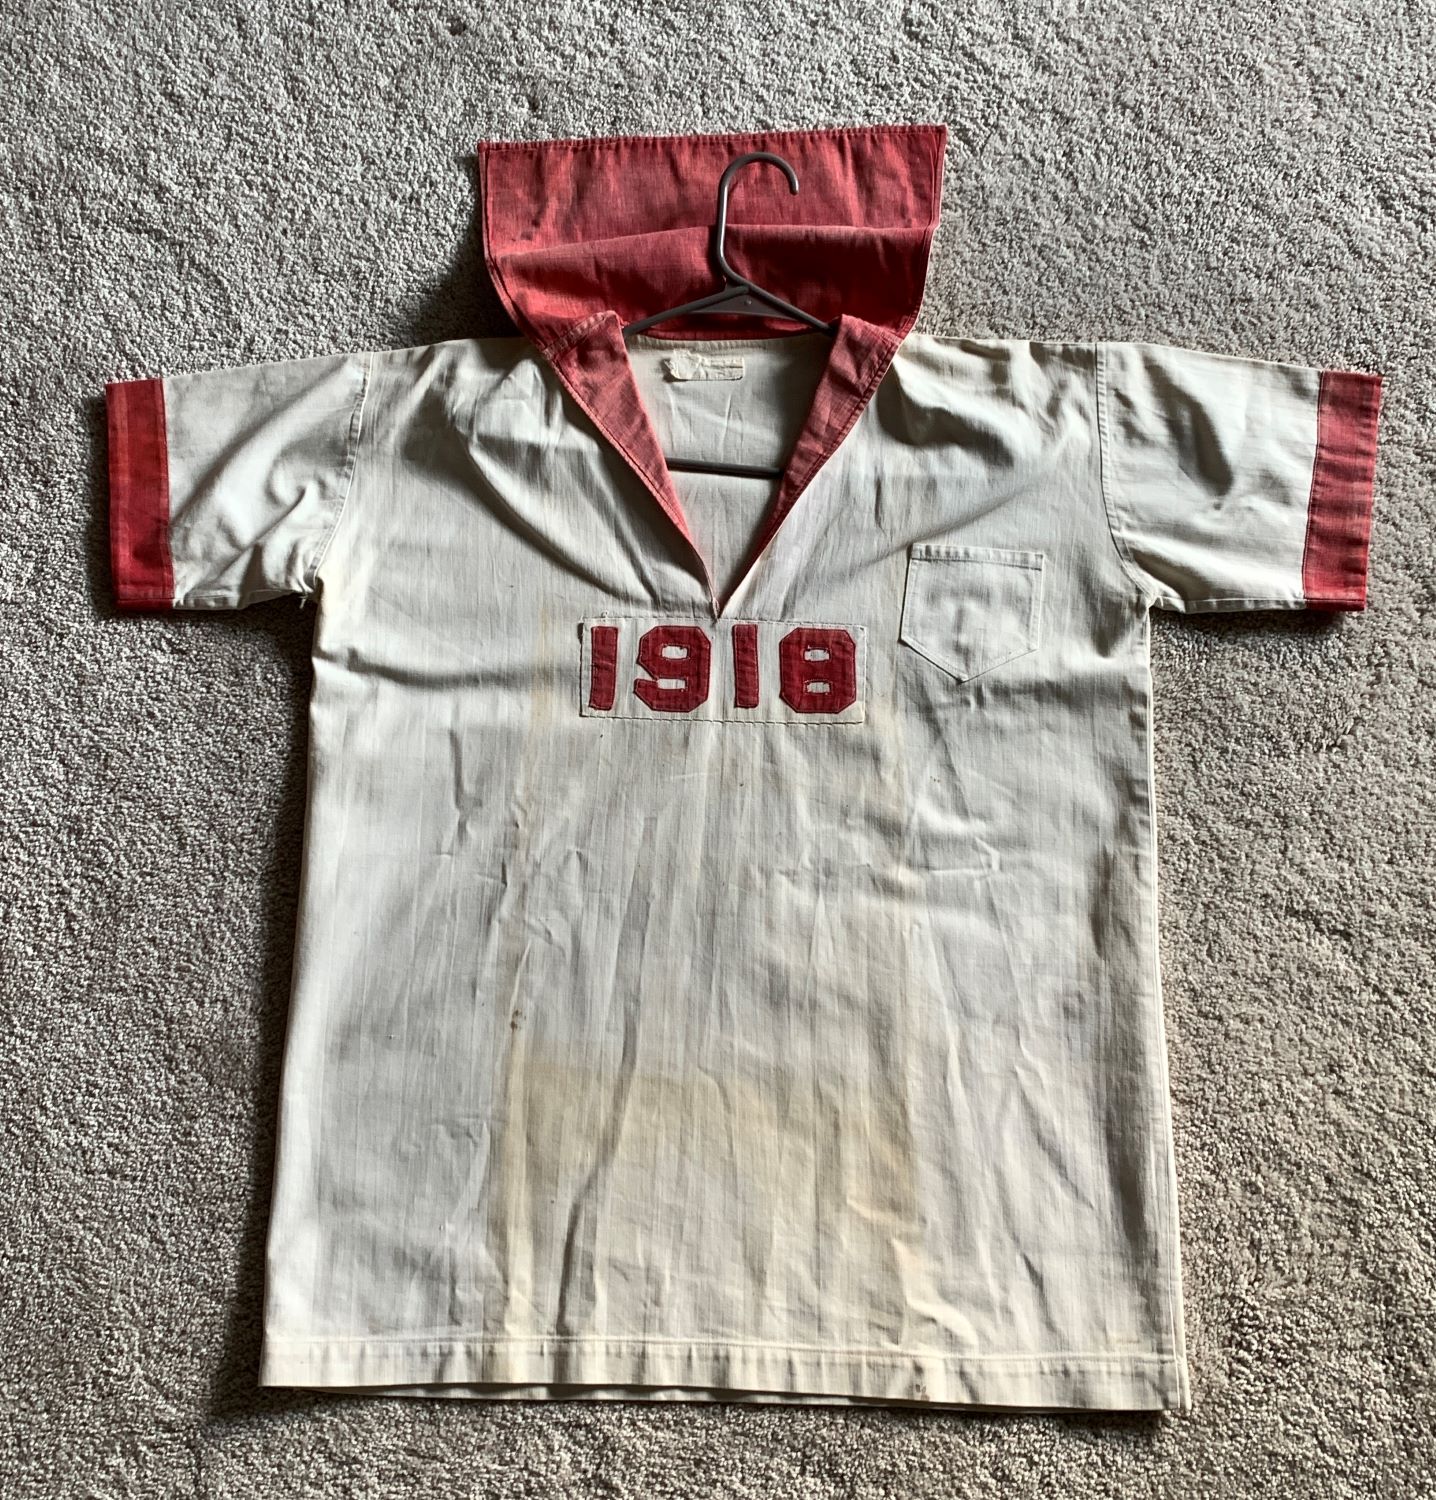 1918 tennis jersey